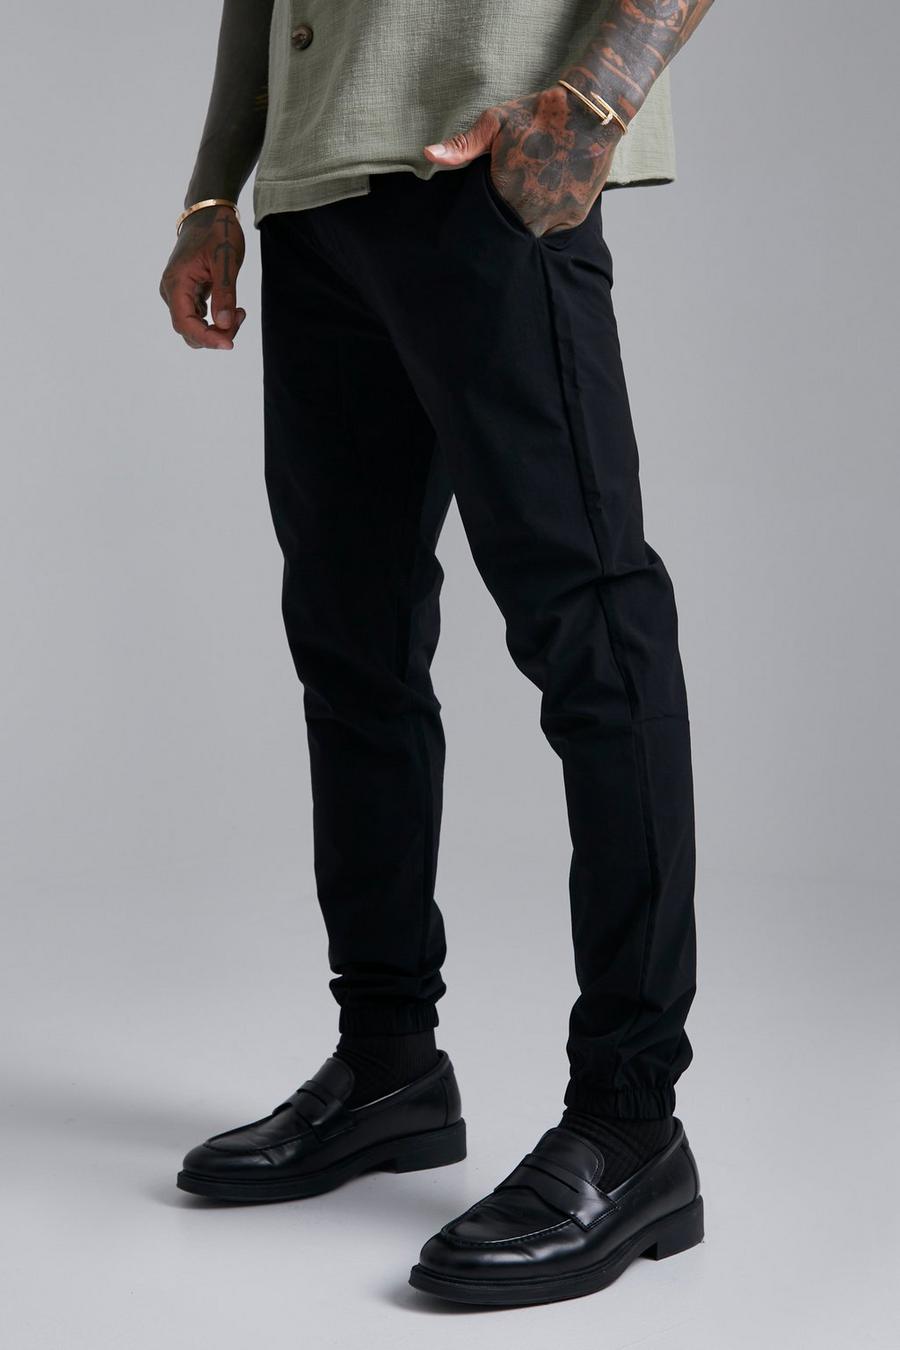 Pantaloni Slim Fit in Stretch tecnico con vita fissa, Black negro